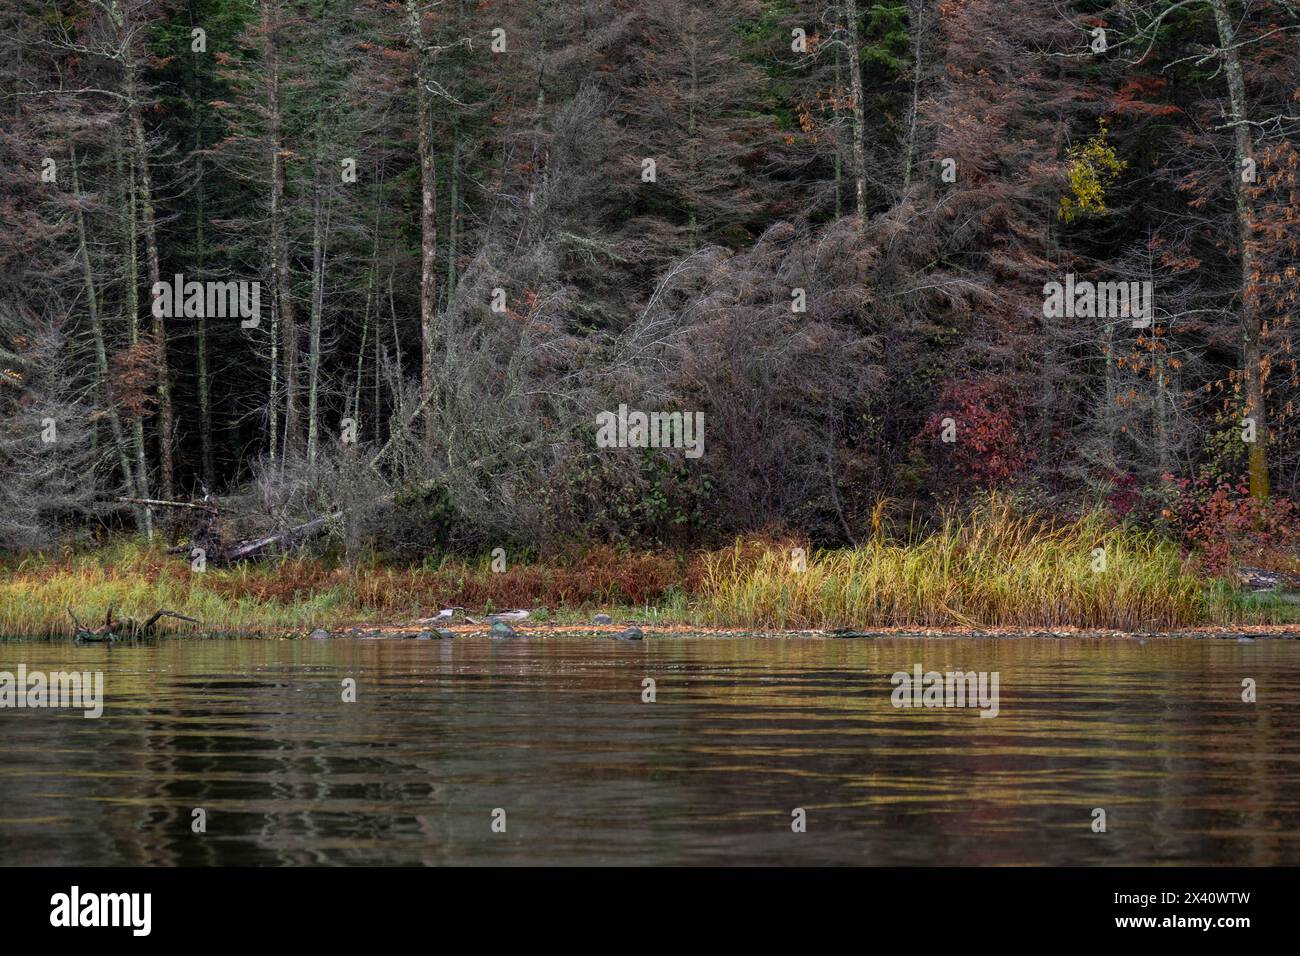 Alberi morti lungo il litorale di un lago, con uno inclinato in basso in una posizione quasi caduta; Lake of the Woods, Ontario, Canada Foto Stock